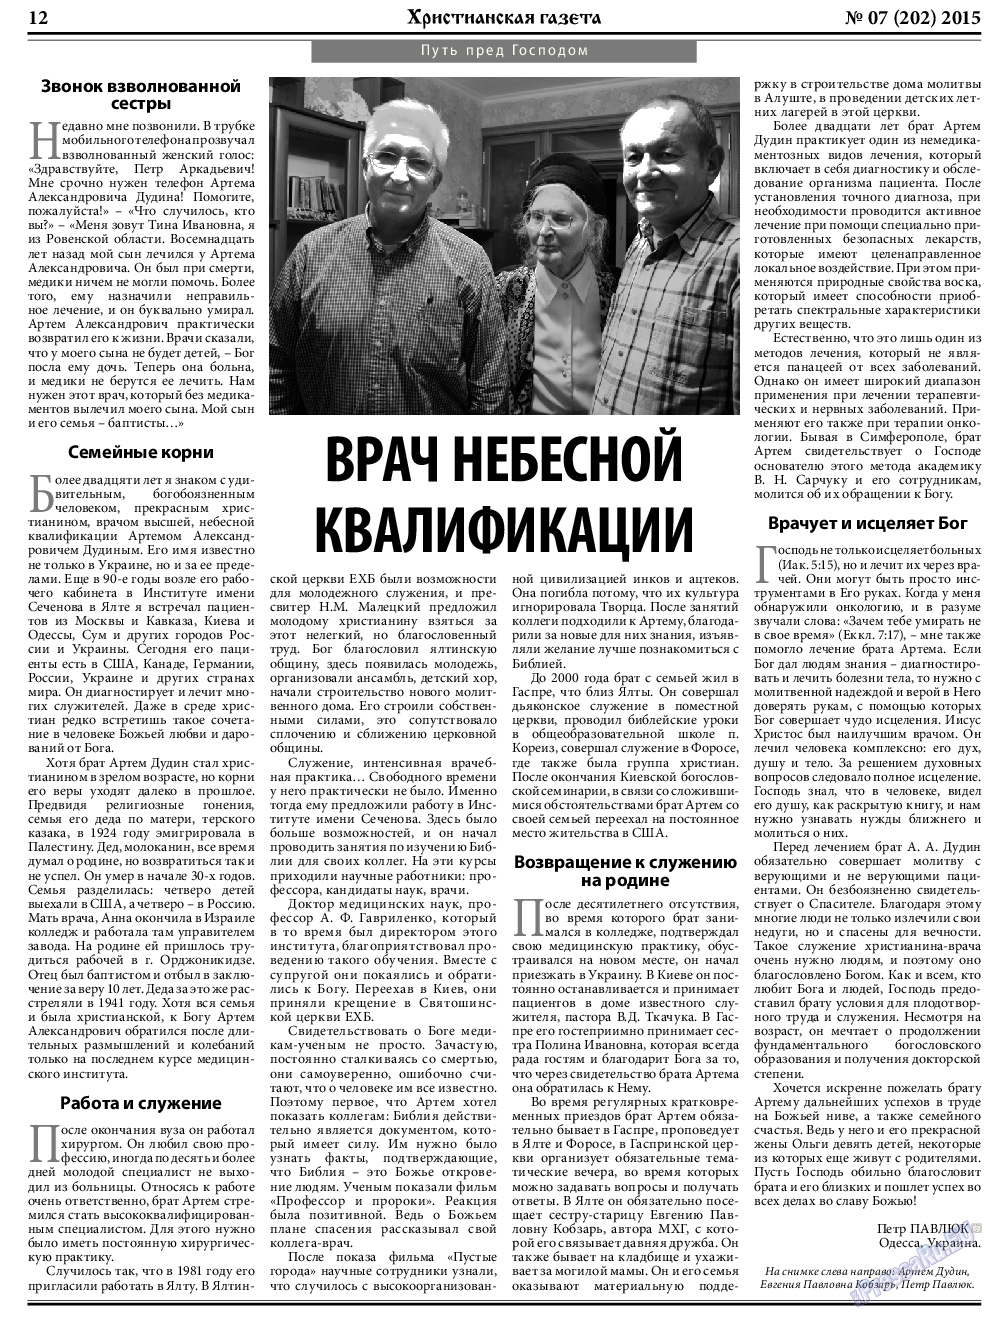 Христианская газета, газета. 2015 №7 стр.12